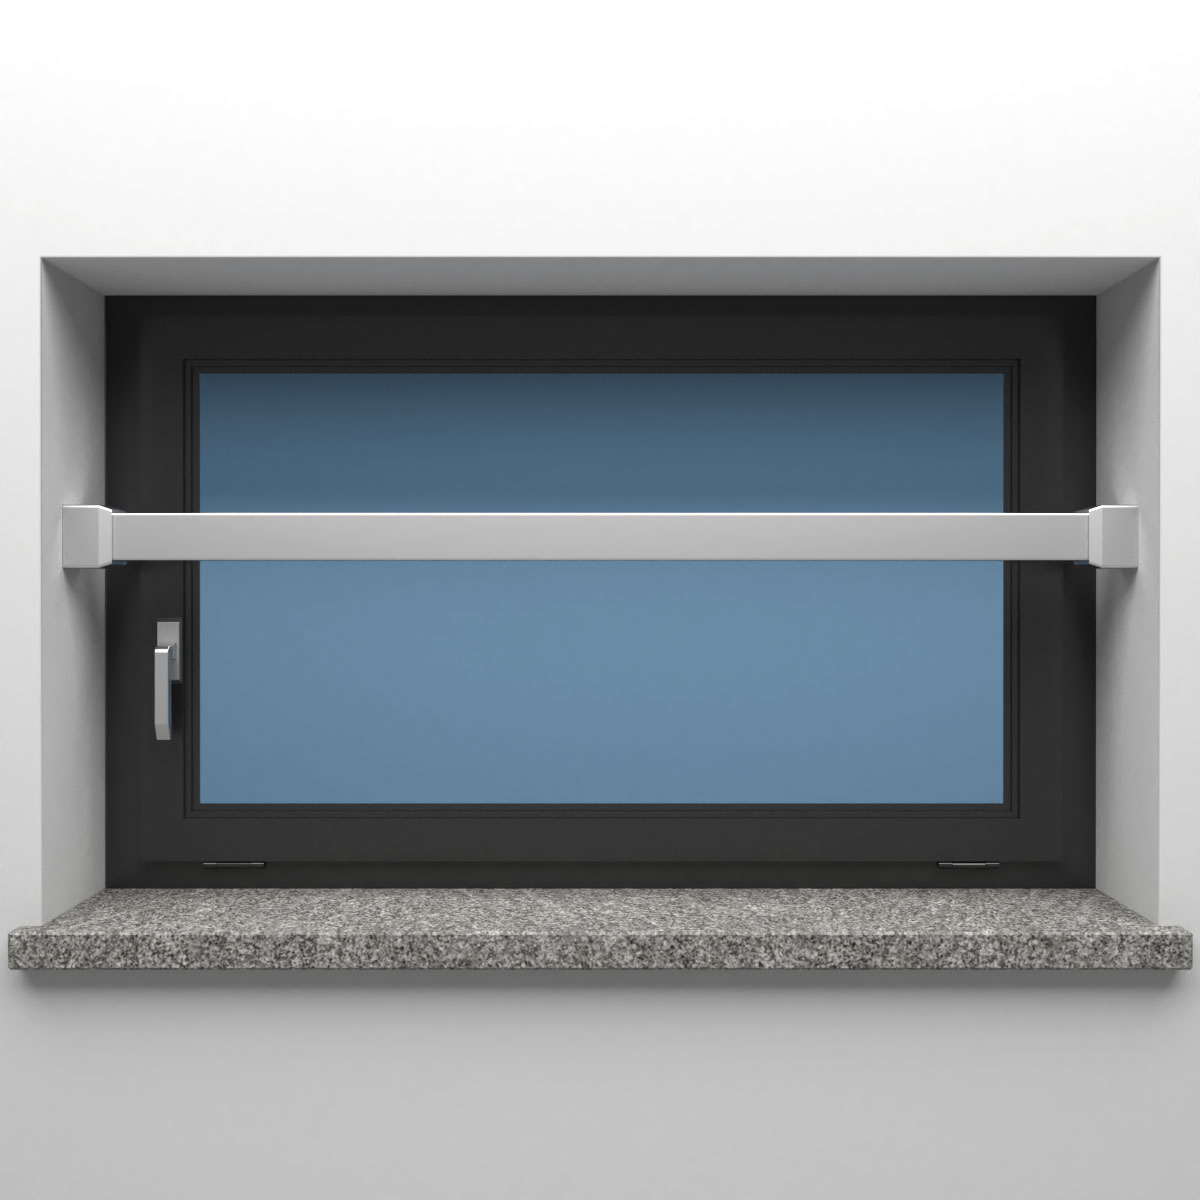 Einbruchschutz mit Fenster Stange 40 x 40 - Jetzt online kaufen